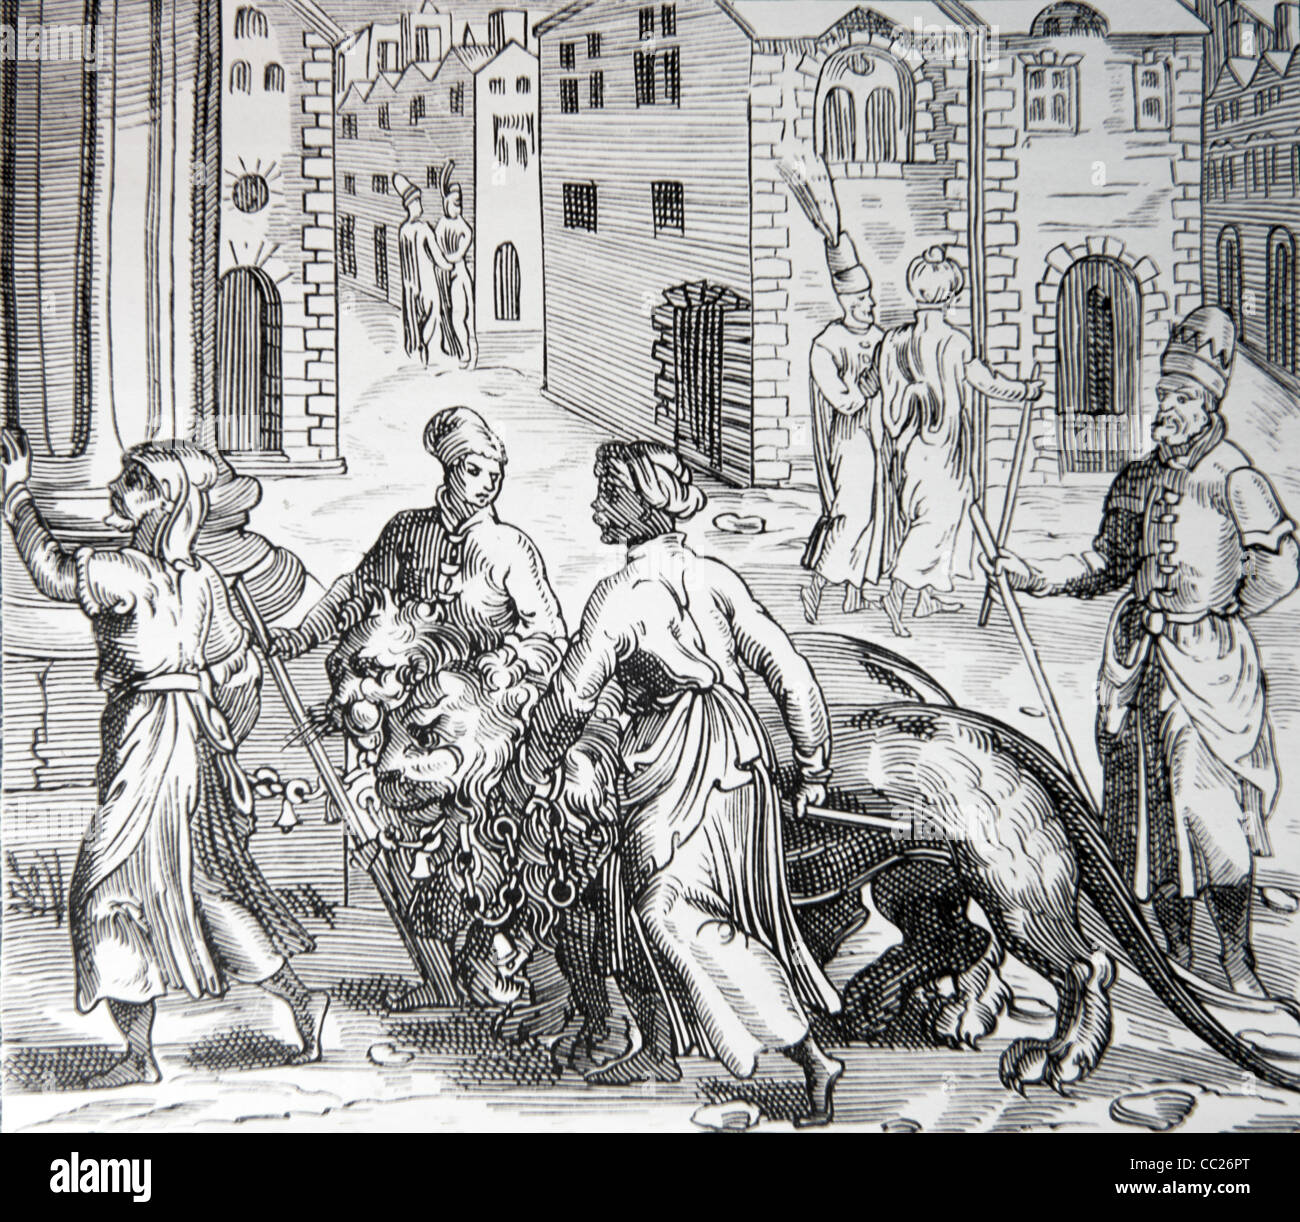 Lion formatori, commercianti e venditori a Costantinopoli (Istanbul), Turchia. 1575 incisione su legno da 'Cosmographie Universelle" Foto Stock